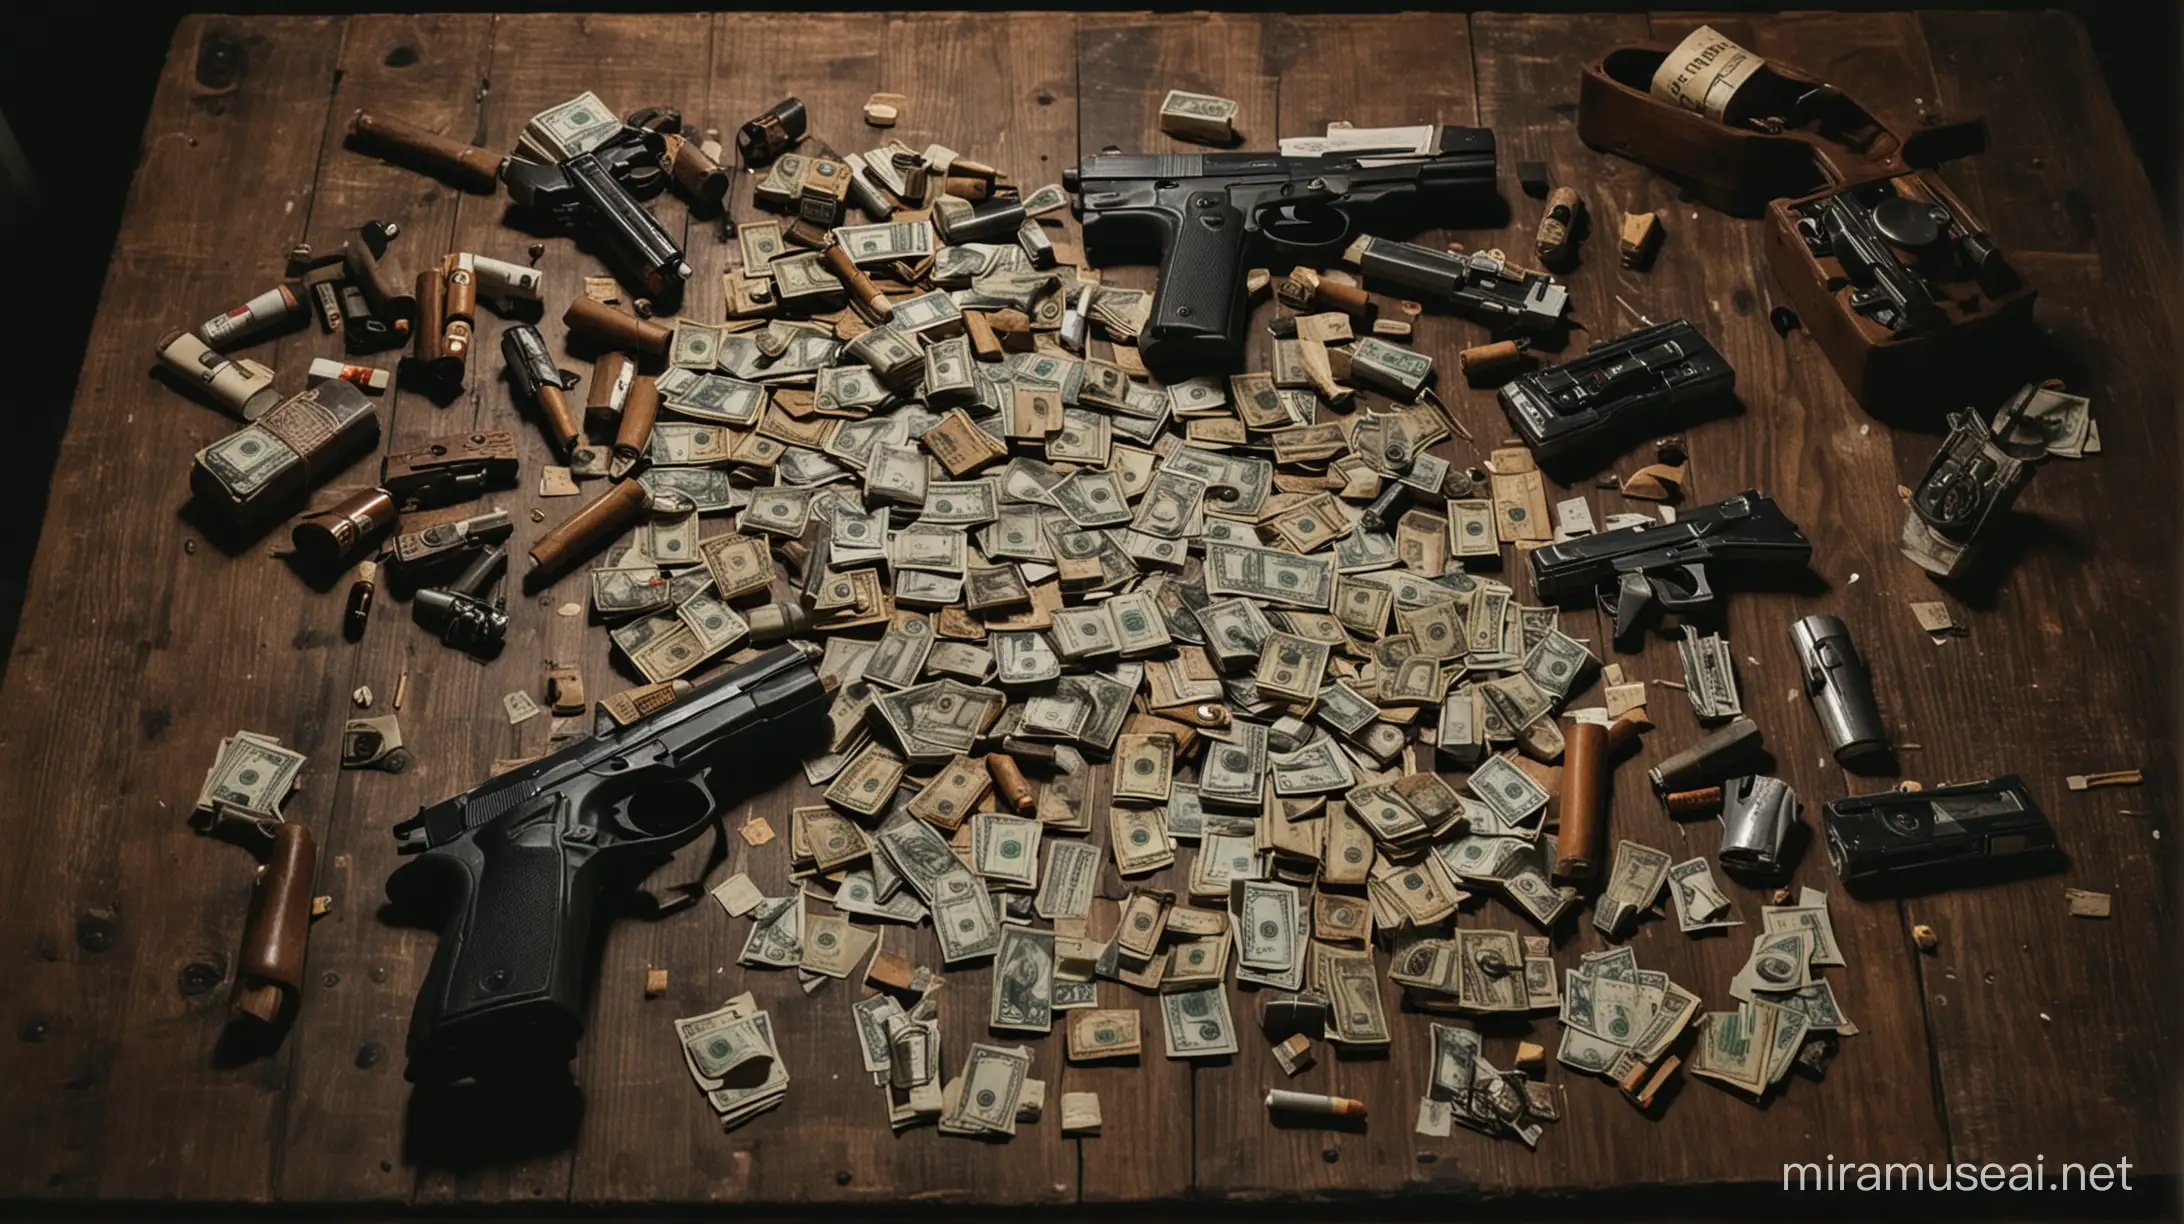 tavolo di legno poco illuminato con soldi, pistole e sigarette e telefoni vecchi